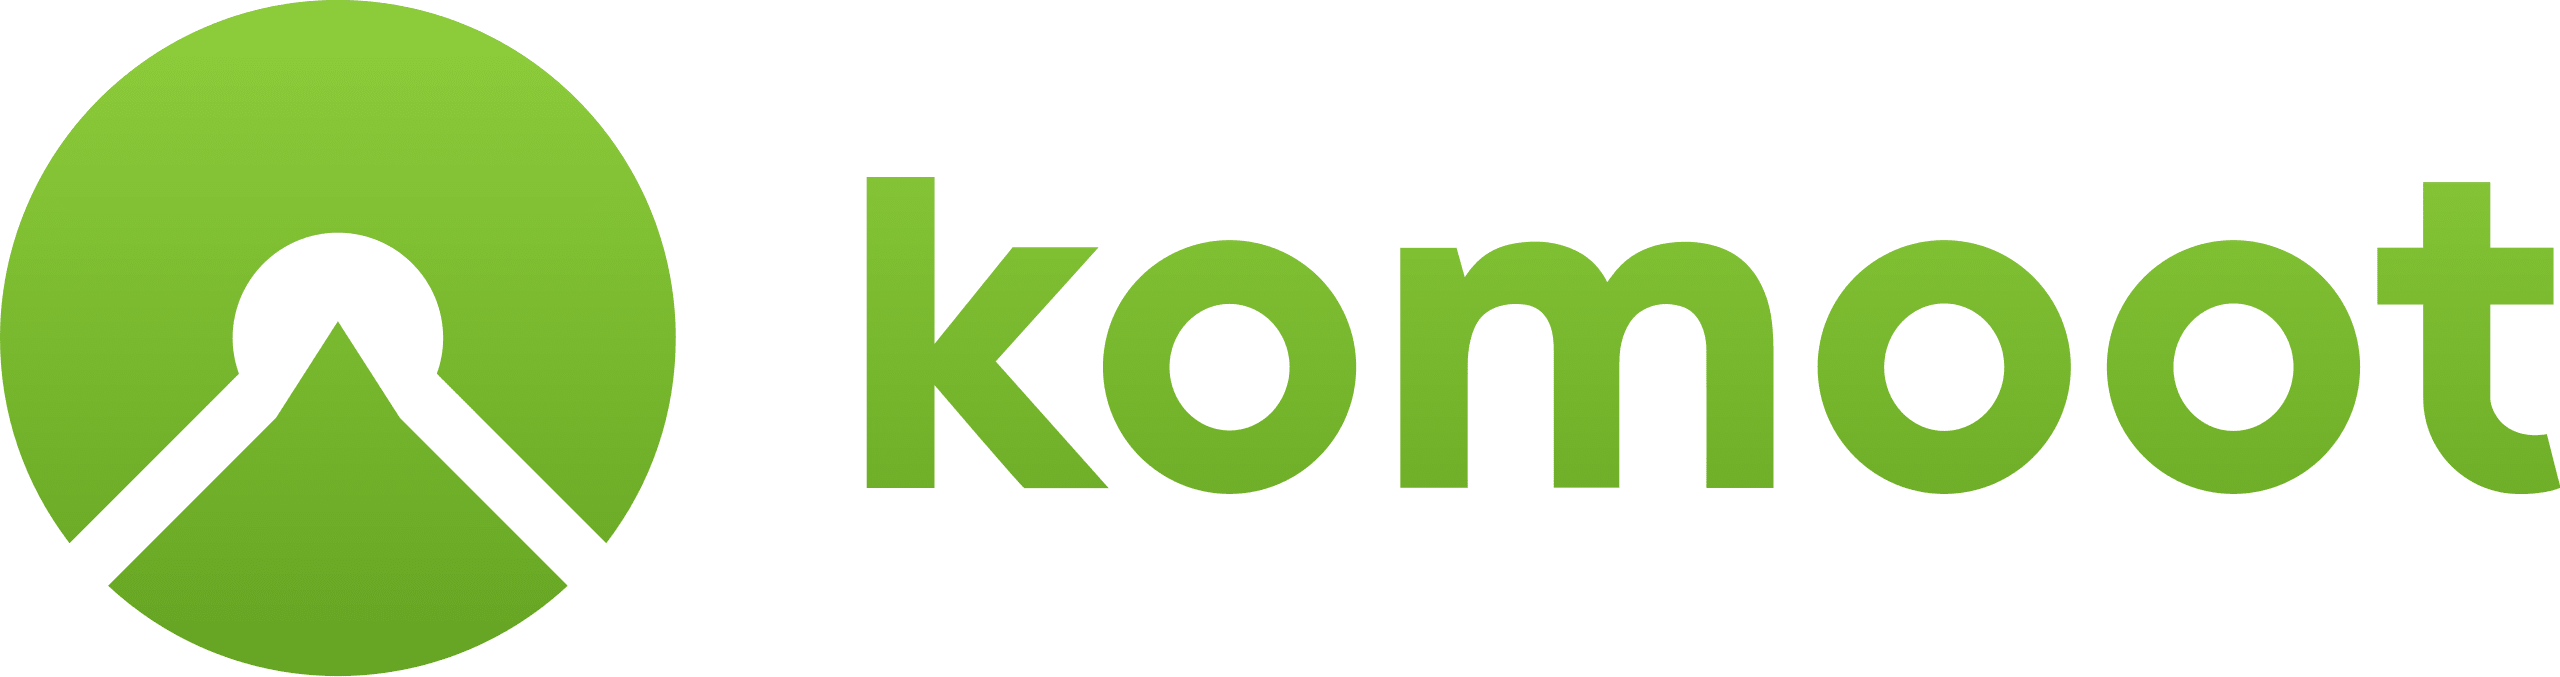 komoot-logo